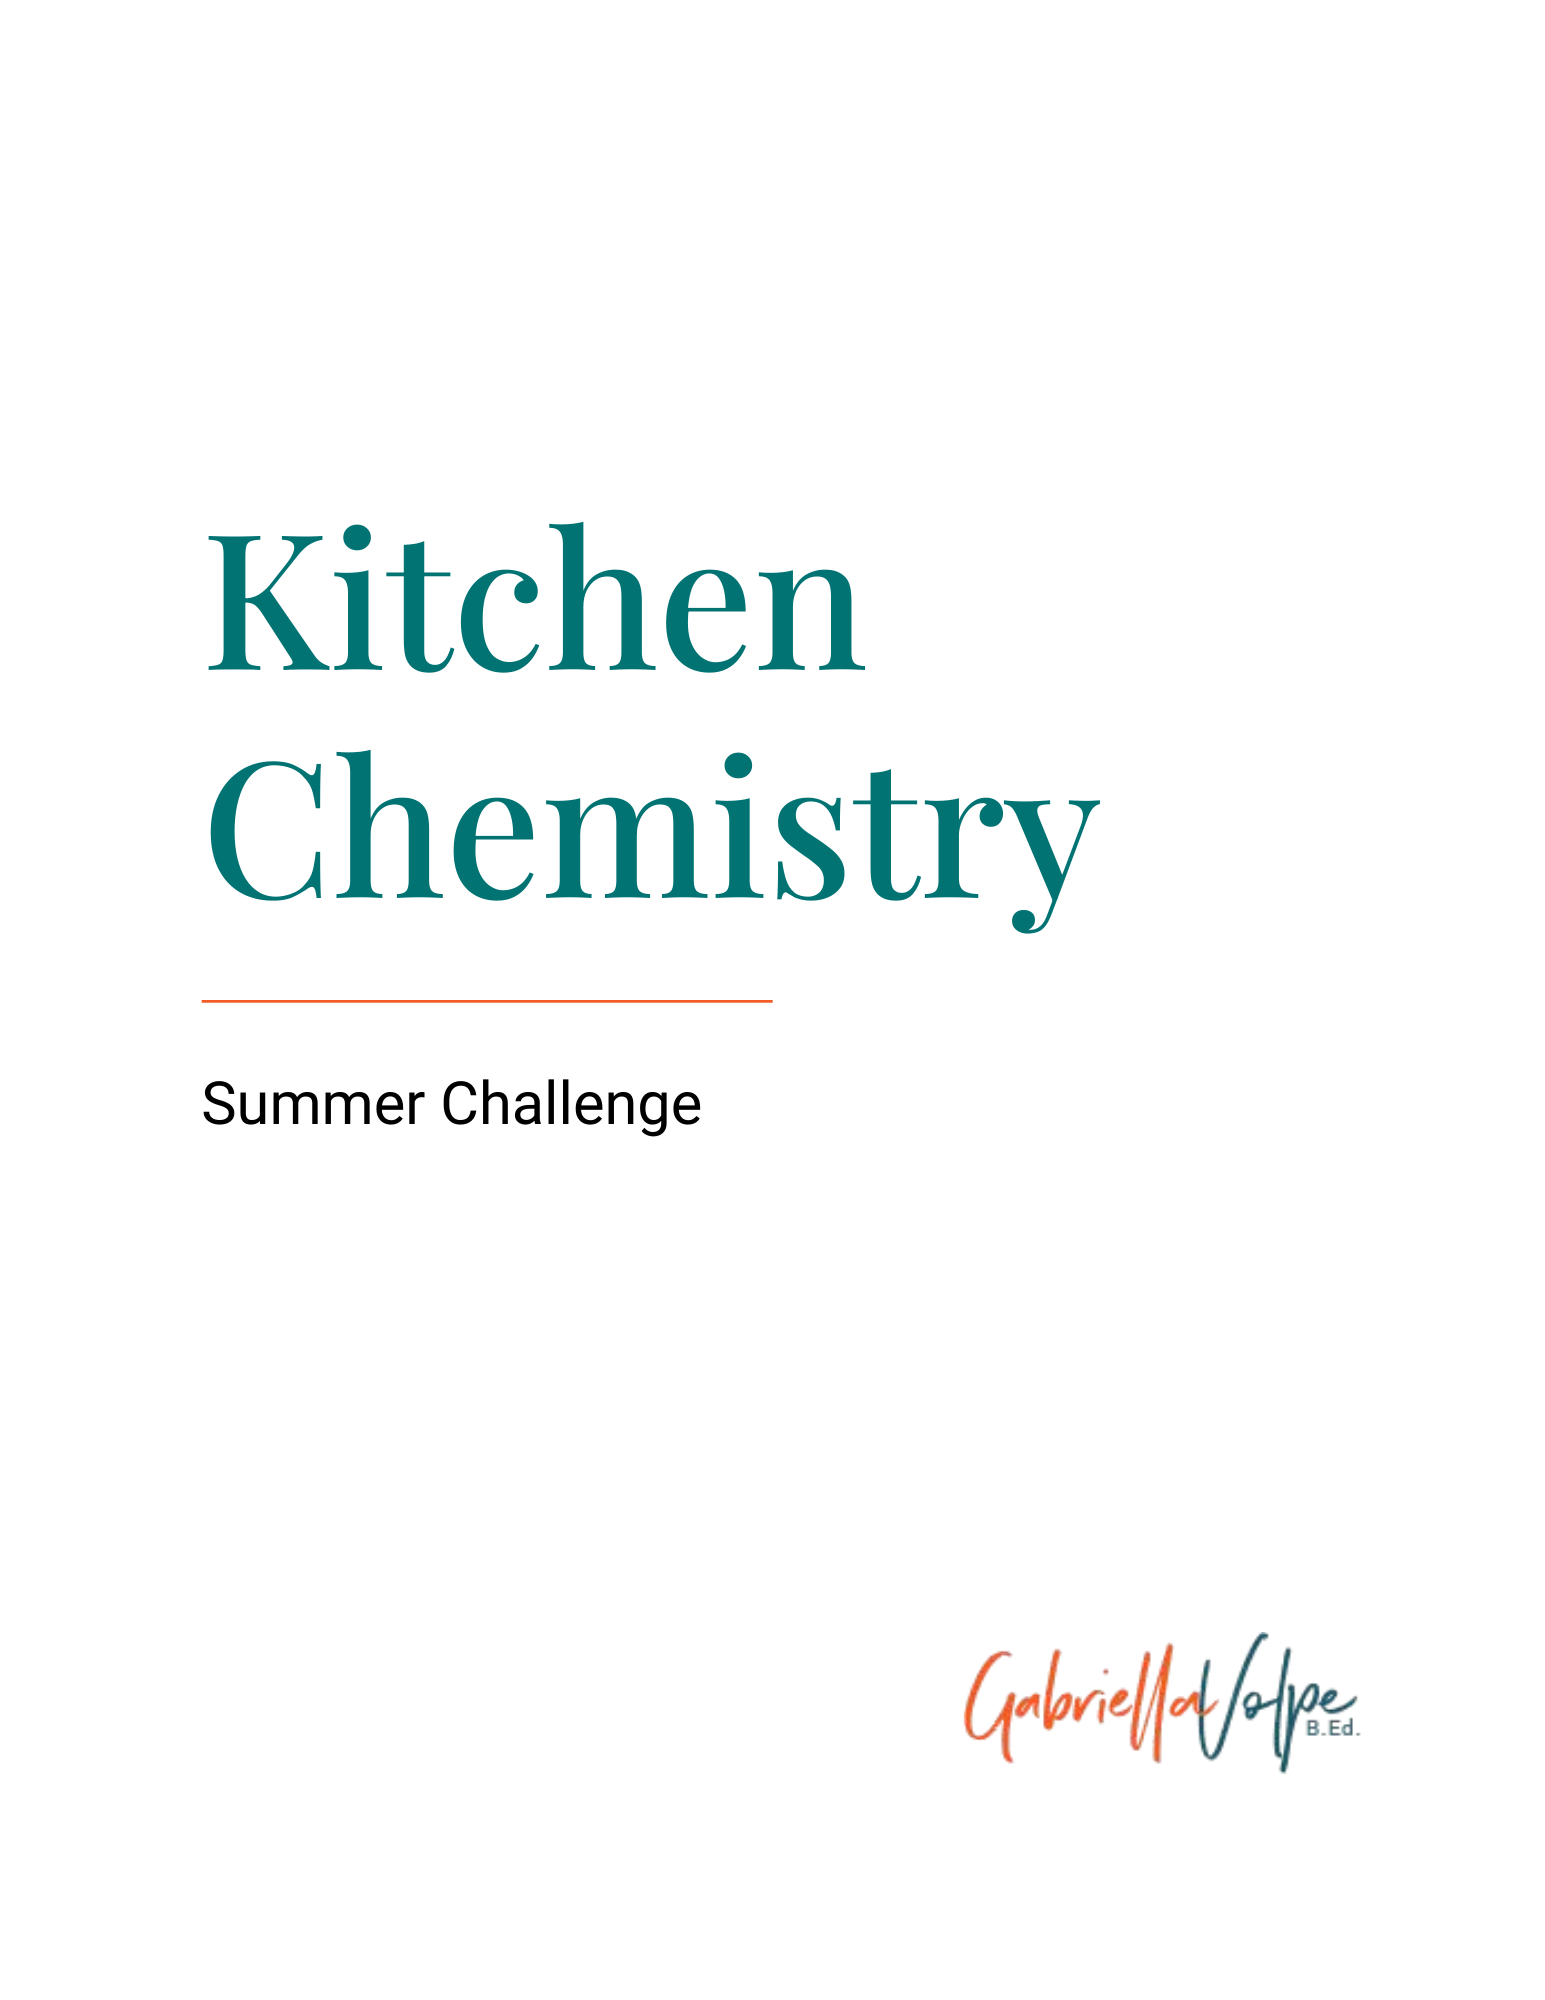 Kitchen Chemistry Summer Challenge